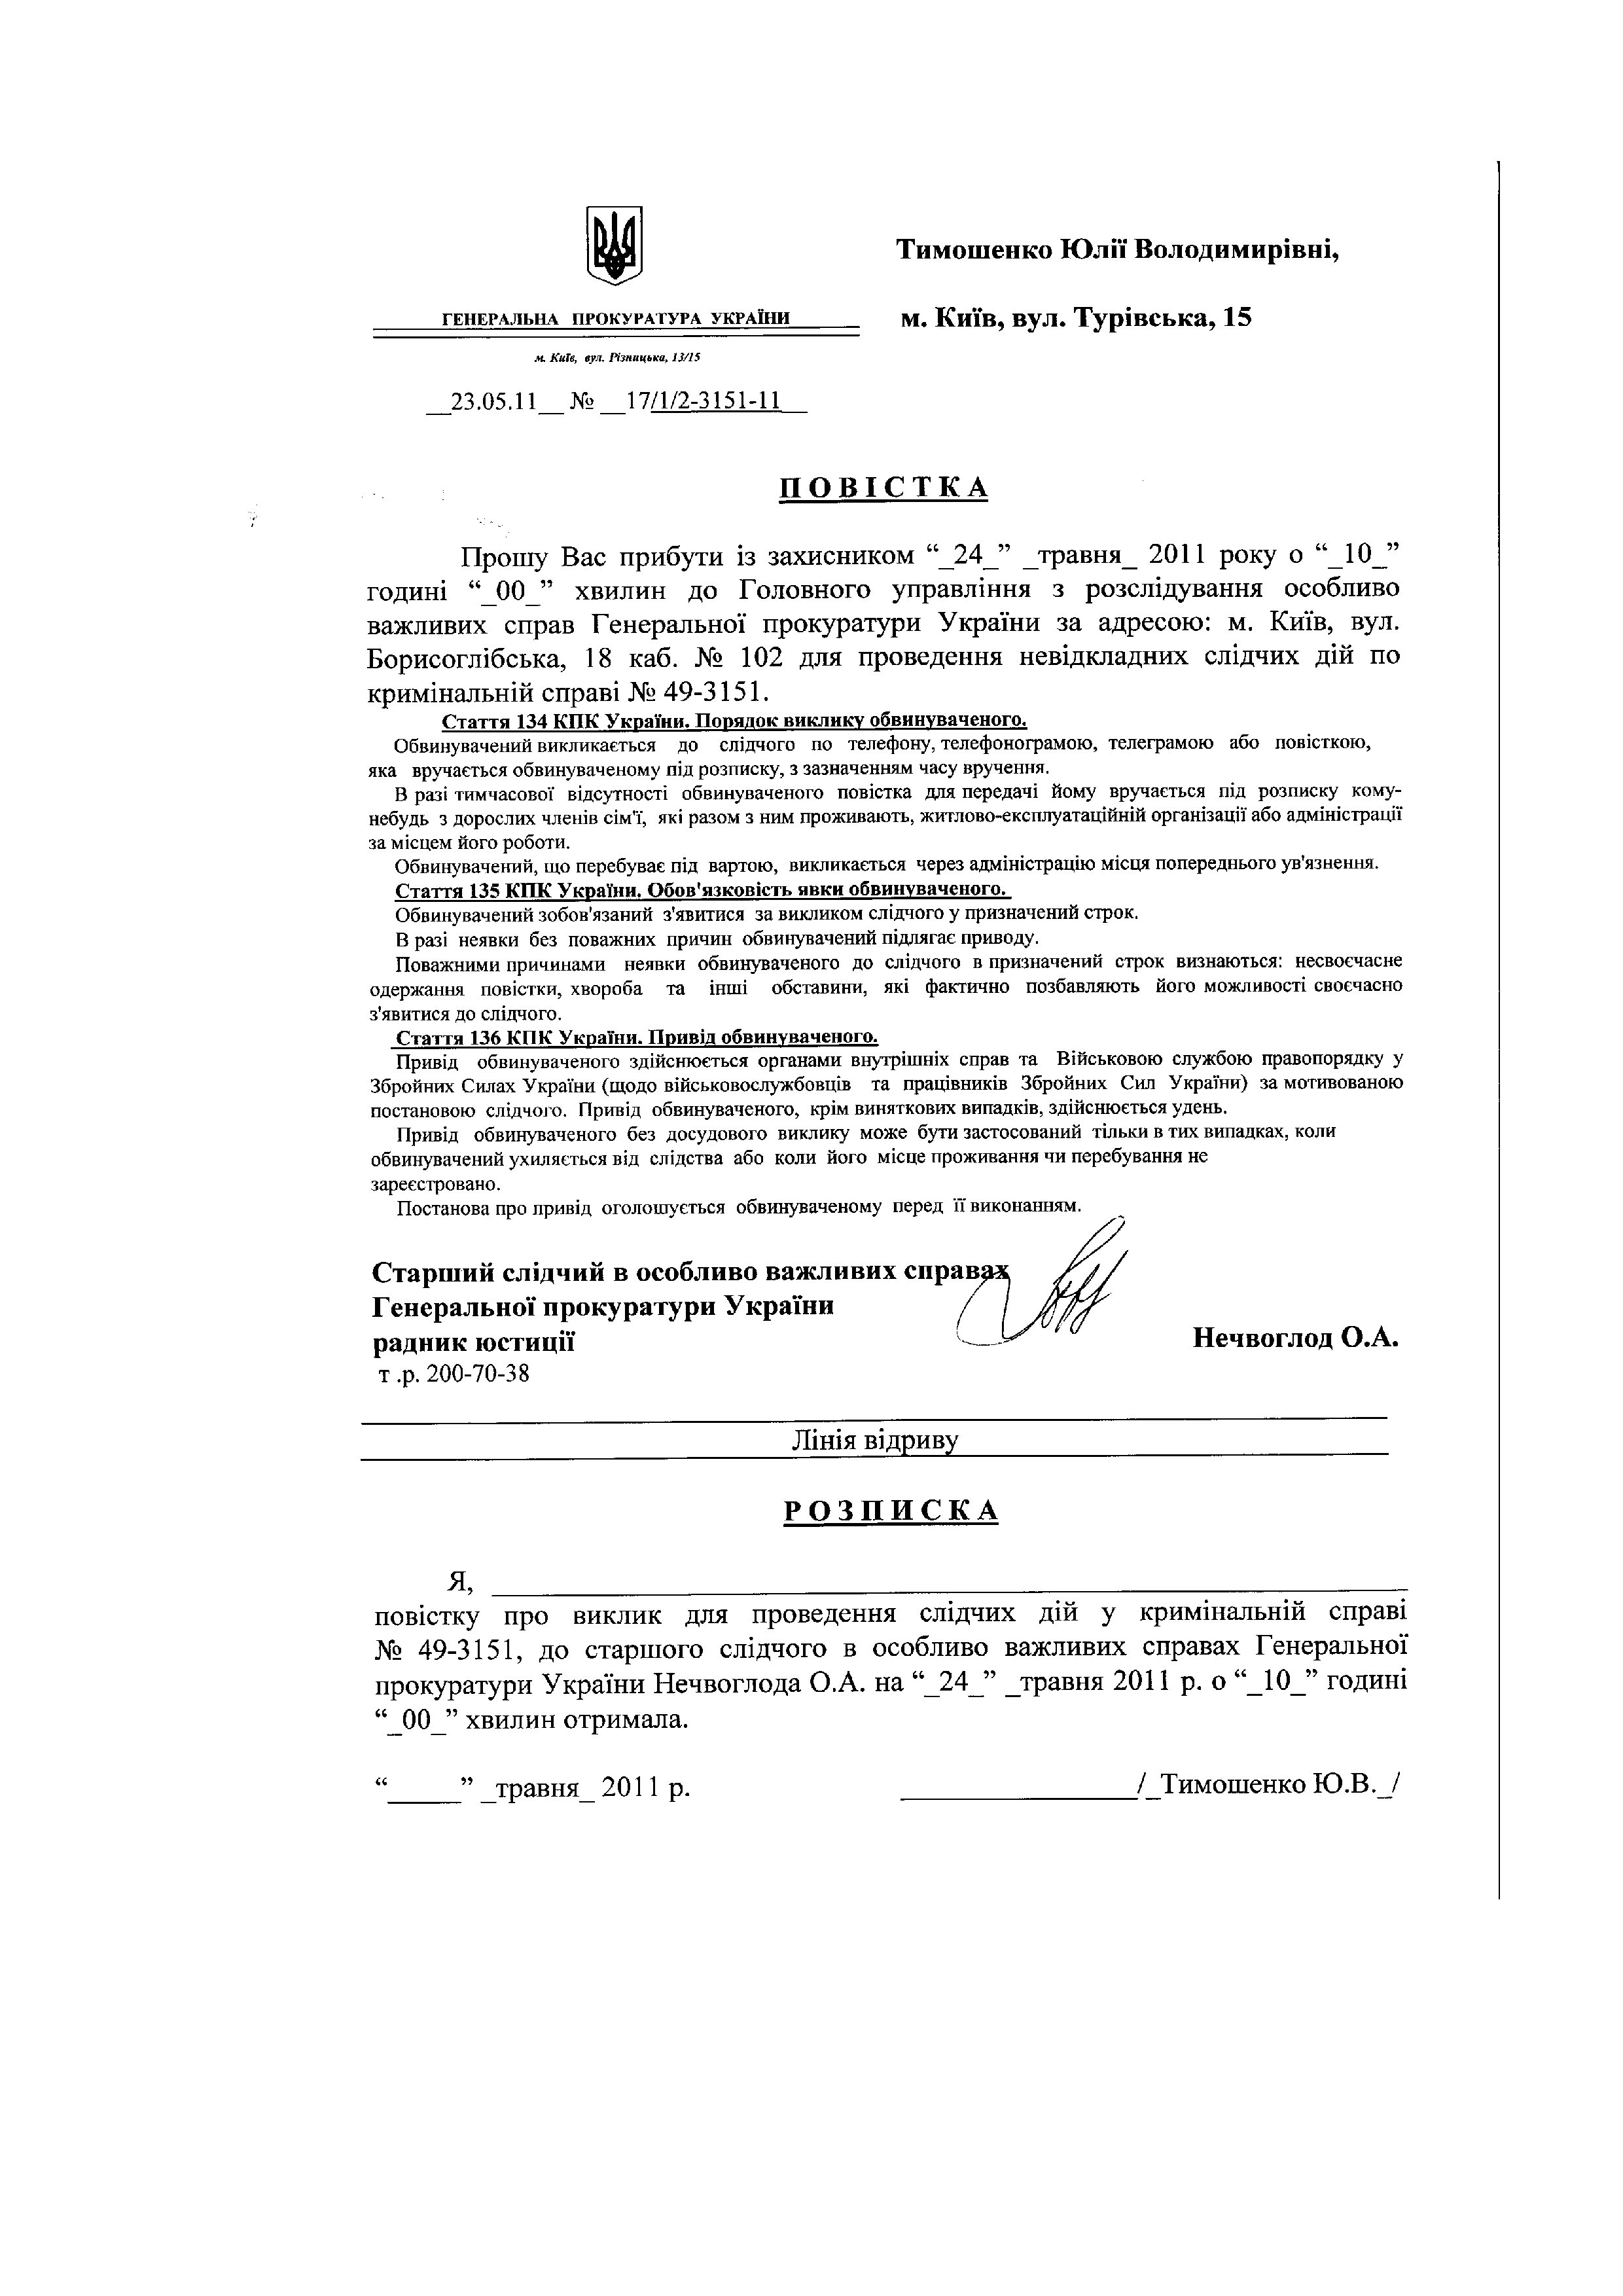 Повістки до ГПУ Тимошенко Ю.В._page001.jpg